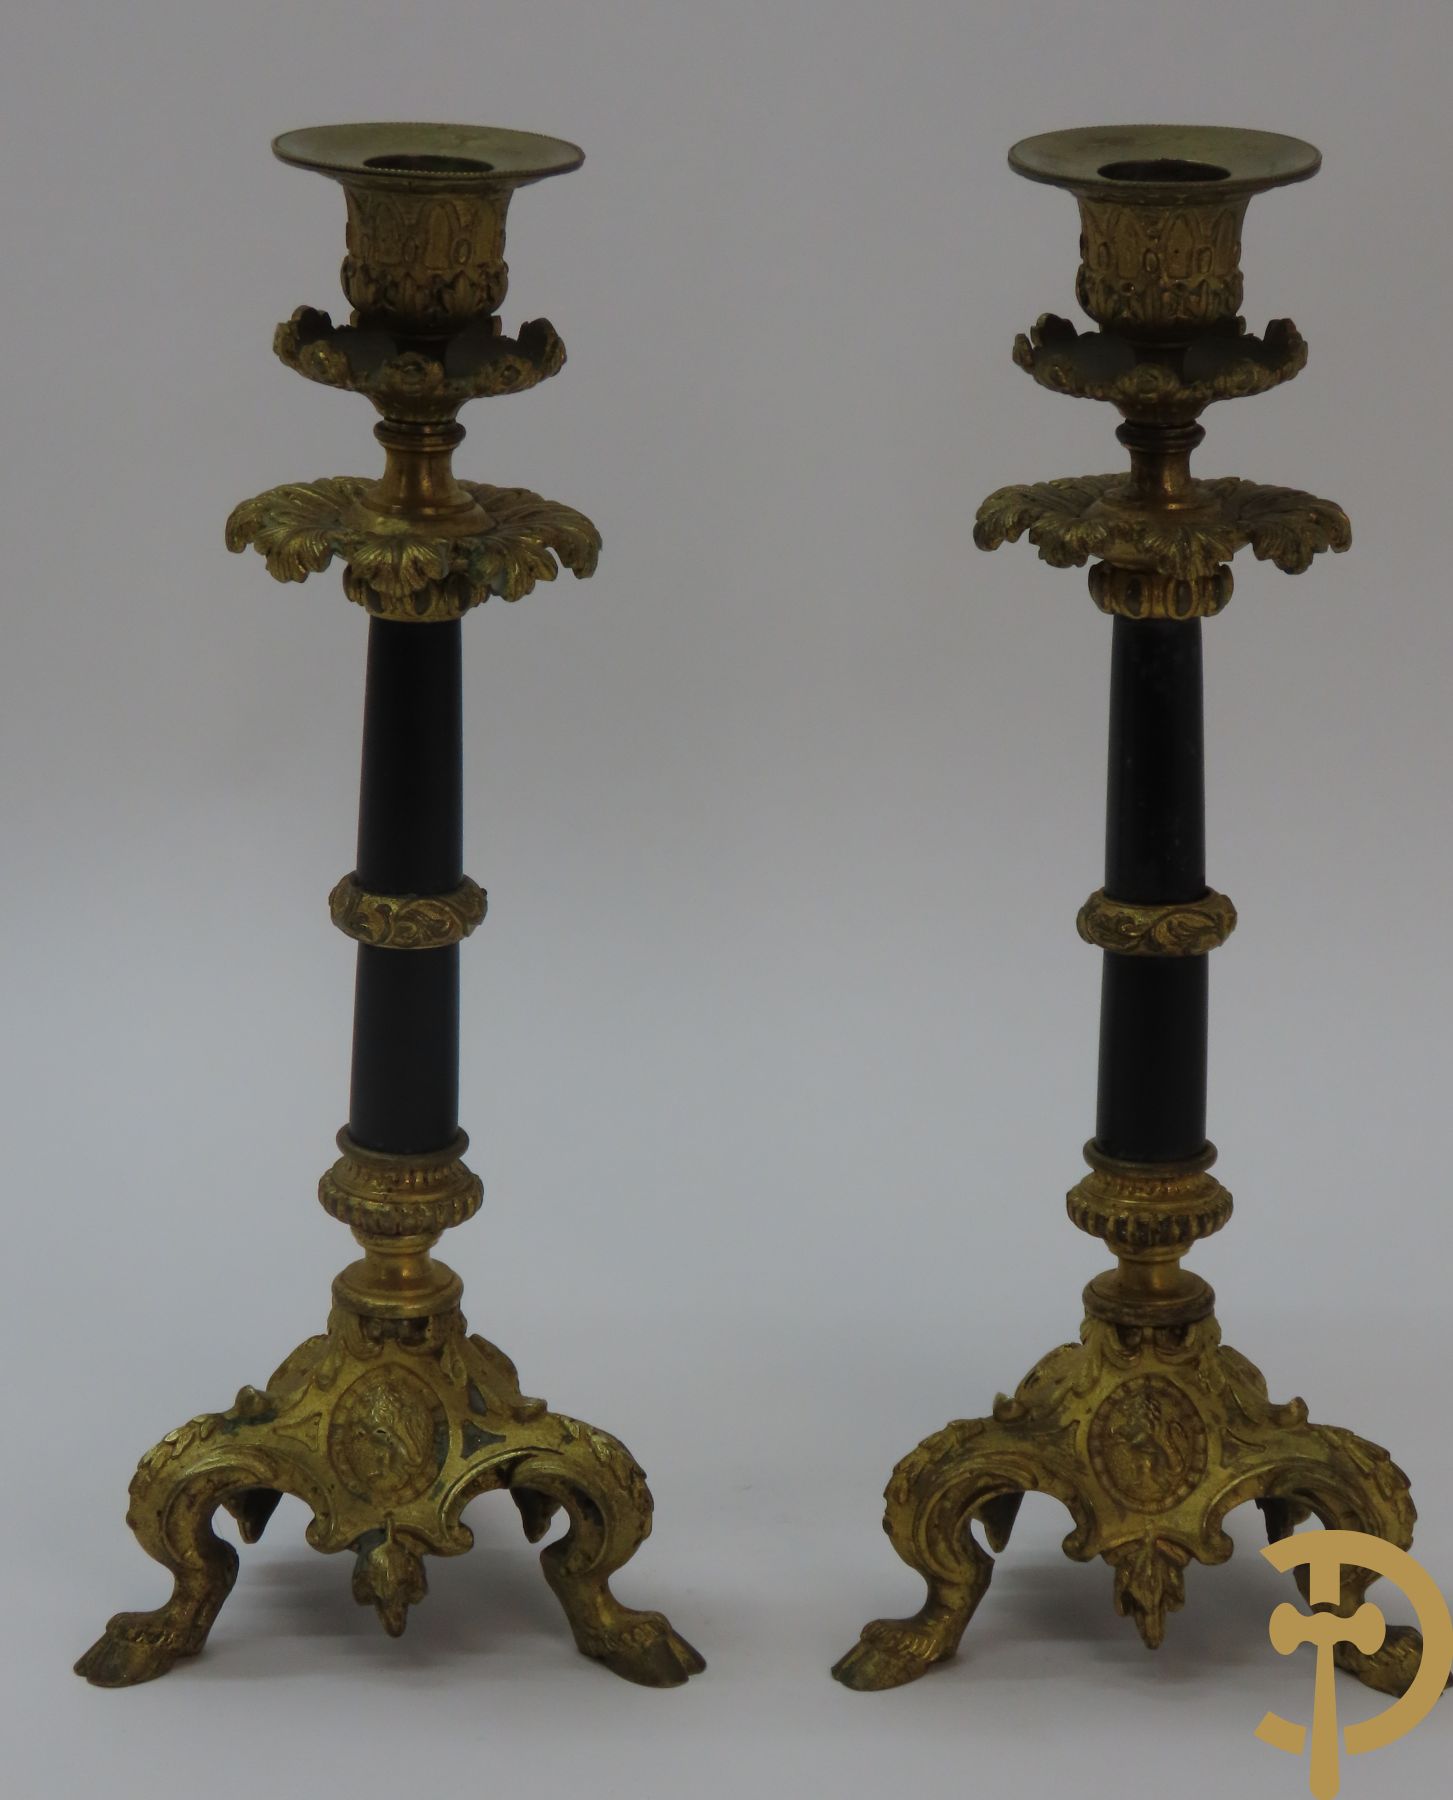 Paar vuurvergulde bronzen kandelaars met zwarte stijl op 3 bokkepootjes